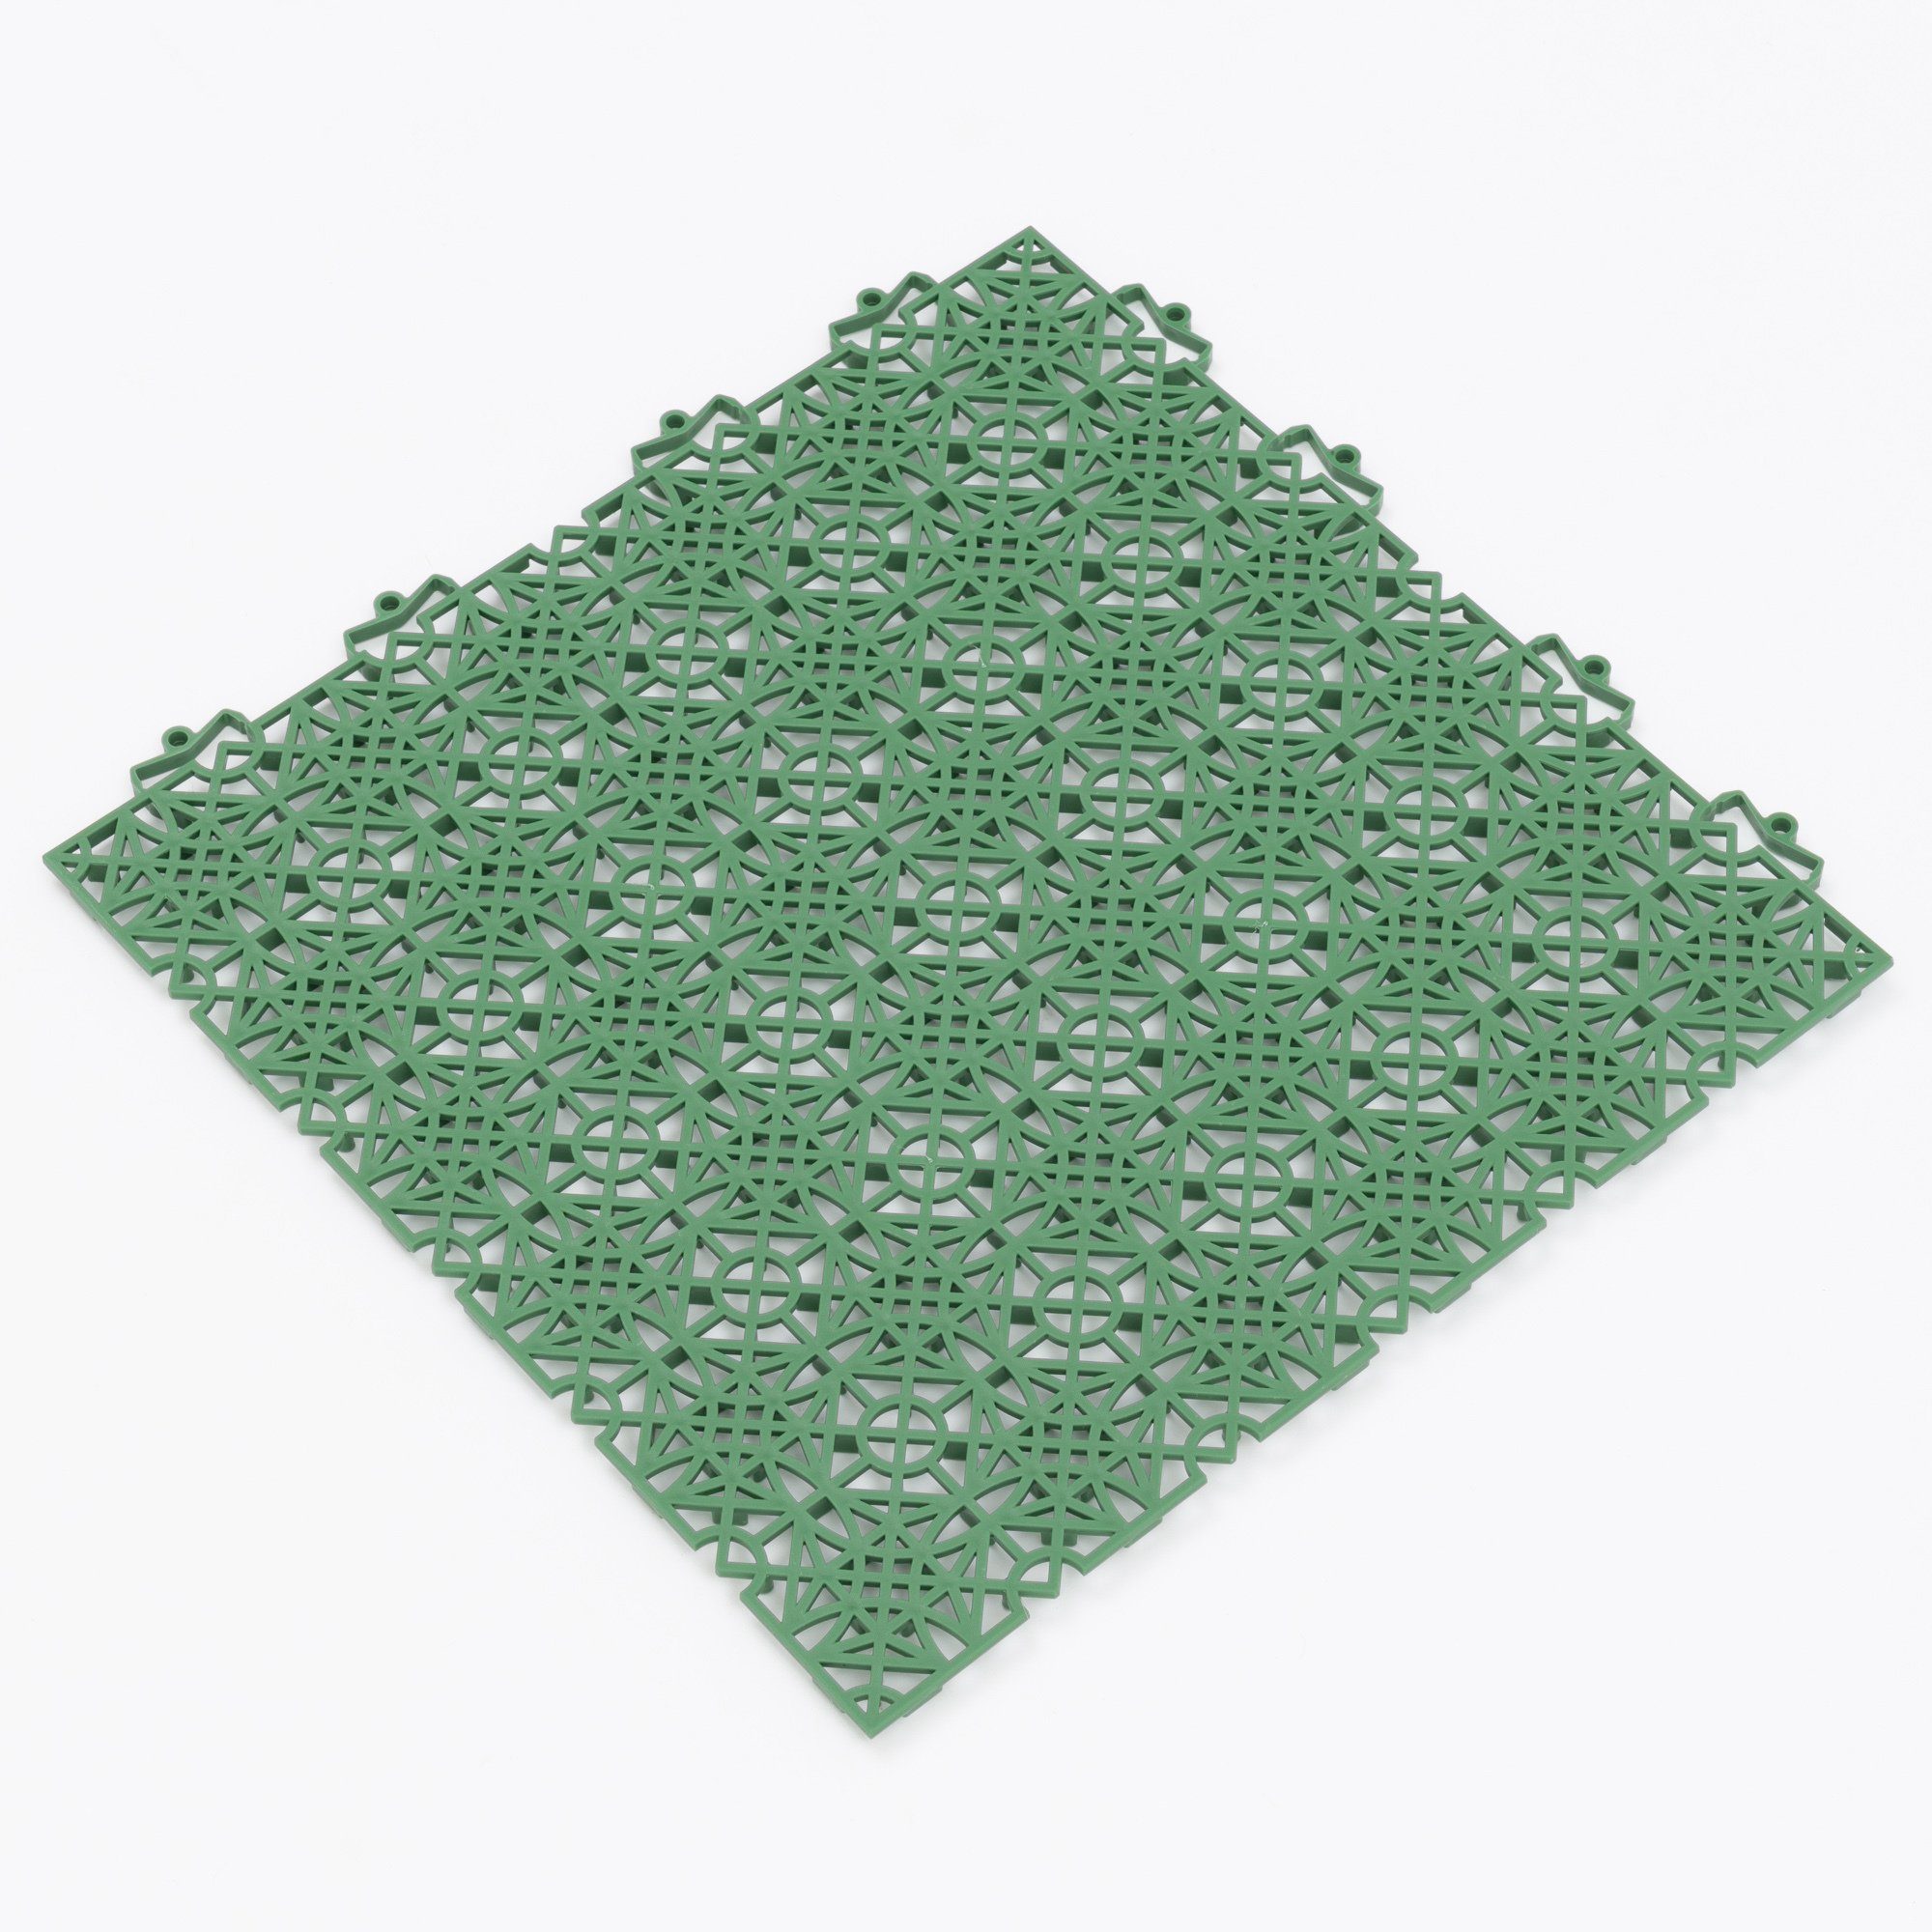 Pergamon 100% Polypropylen Bodenfliese mit Ibiza, 38x38, Klicksystem Bodenfliese Kunststoff Grün